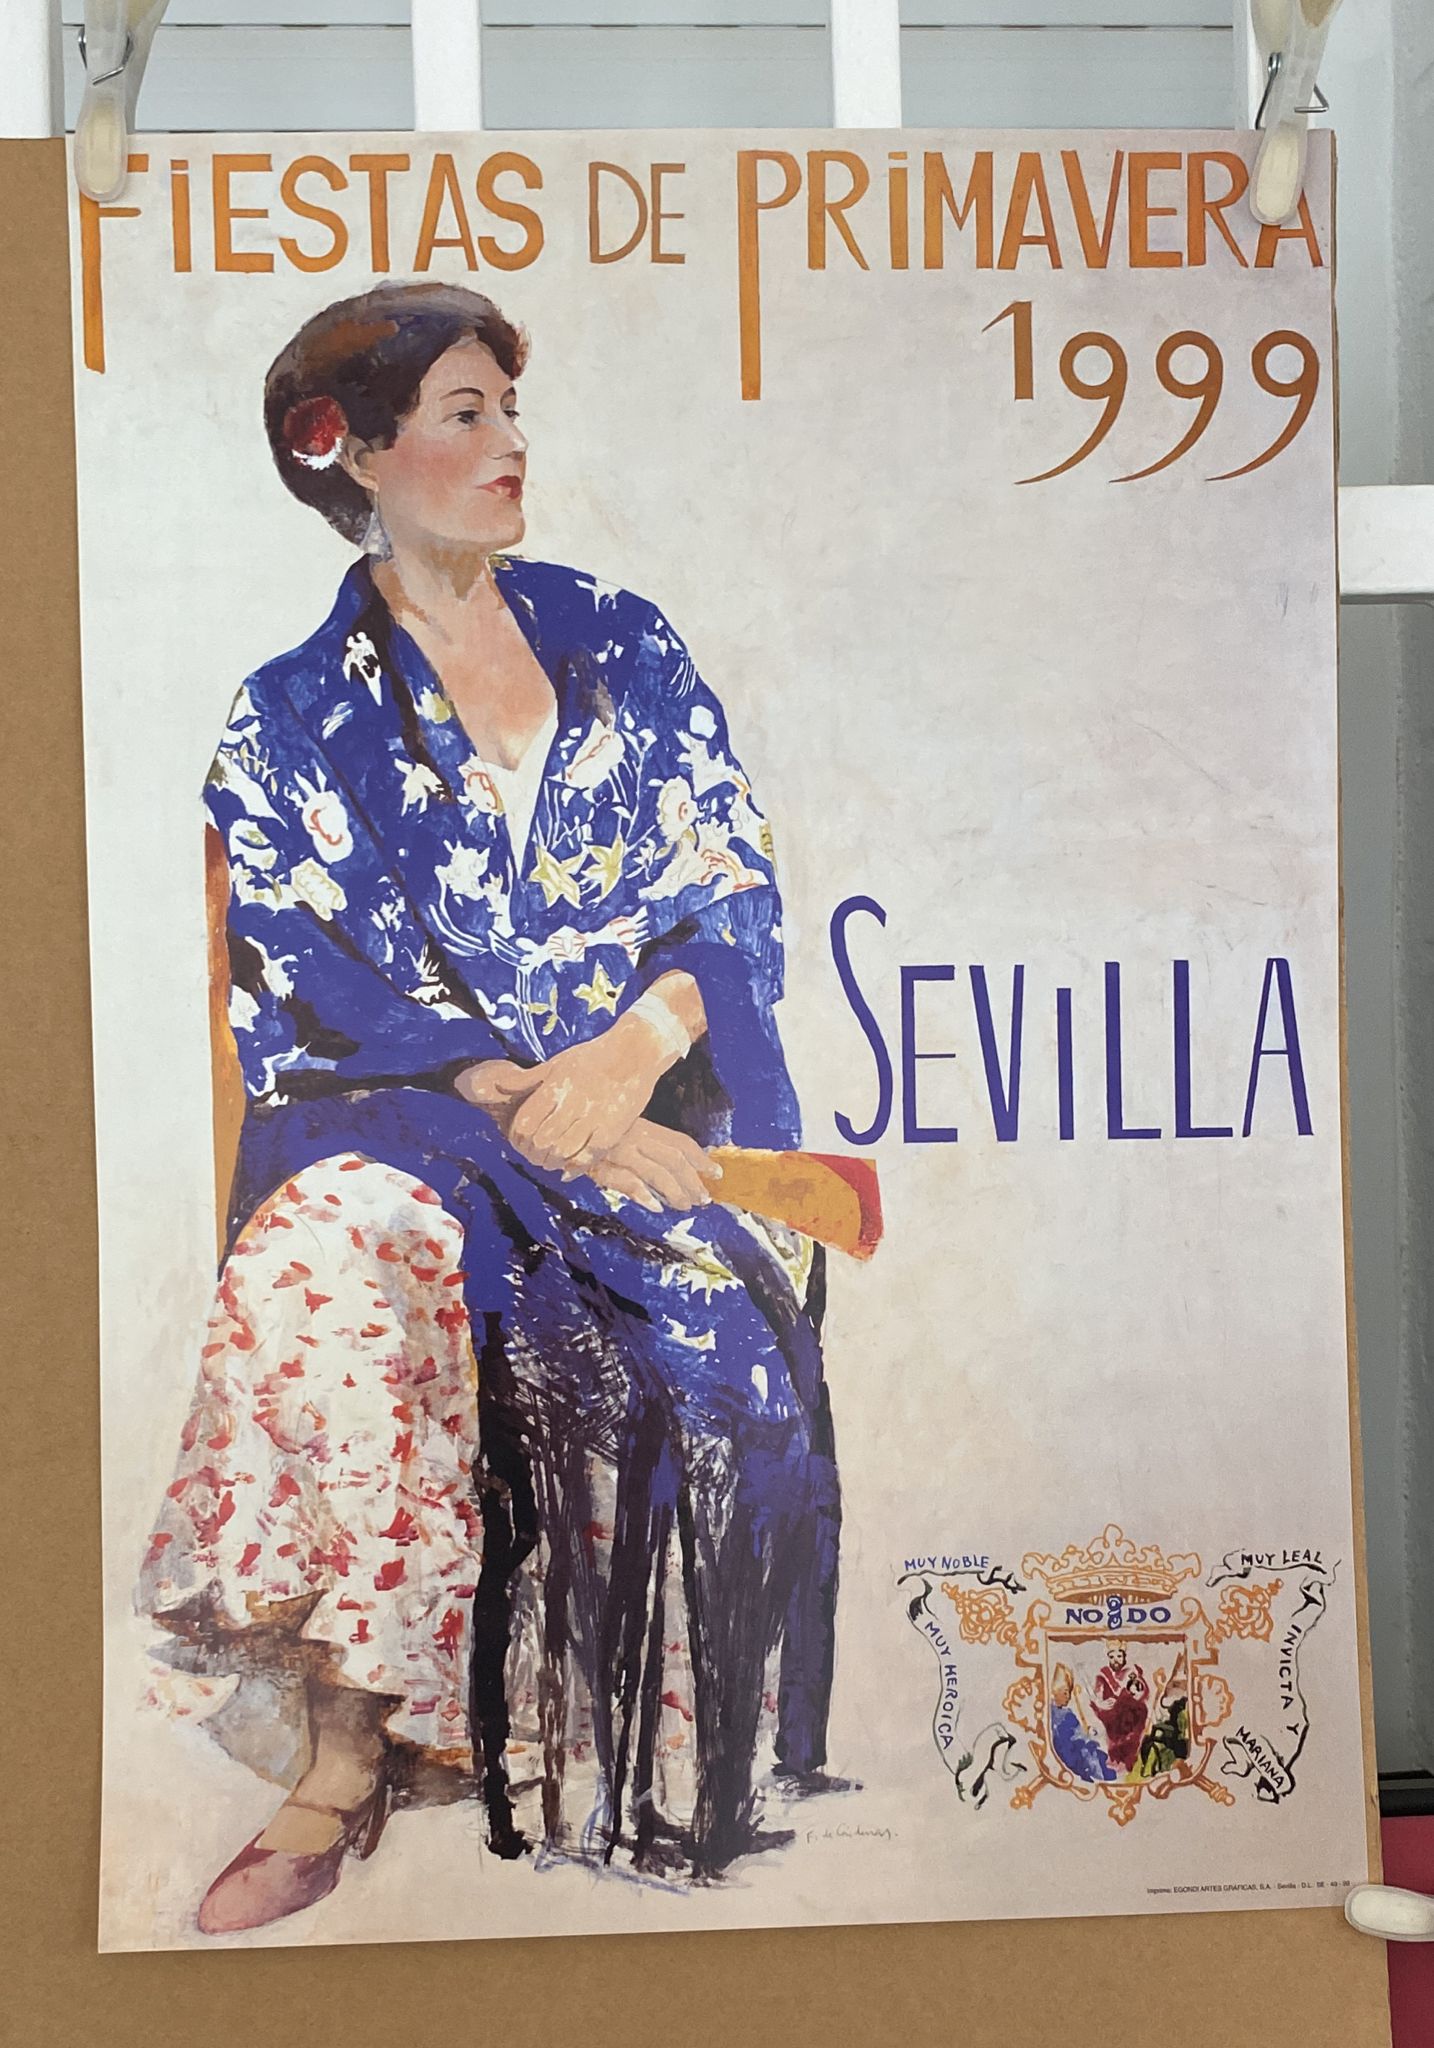 Cartel (47,5x33,5) Sevilla Fiestas de Primavera 1999. Autor Cárdenas